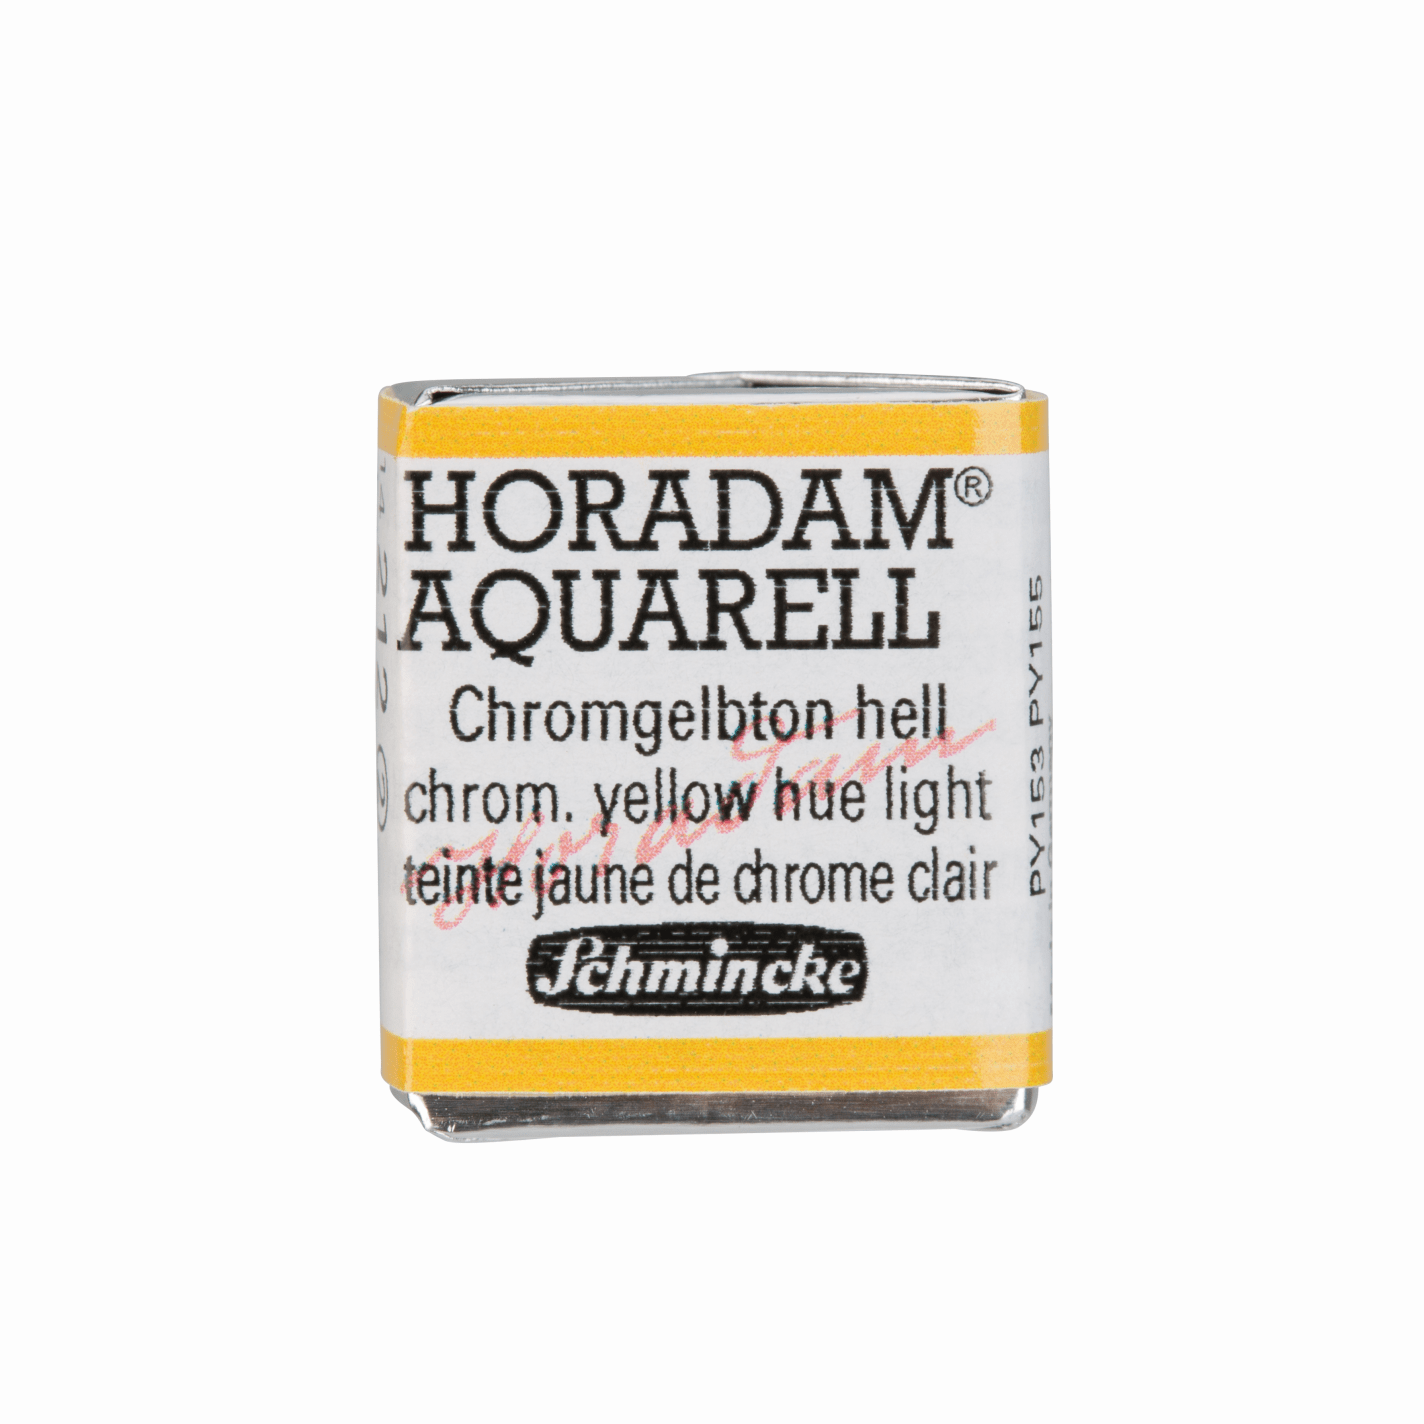 Schmincke Horadam Aquarell pans 1/2 pan Yellow Hue Light